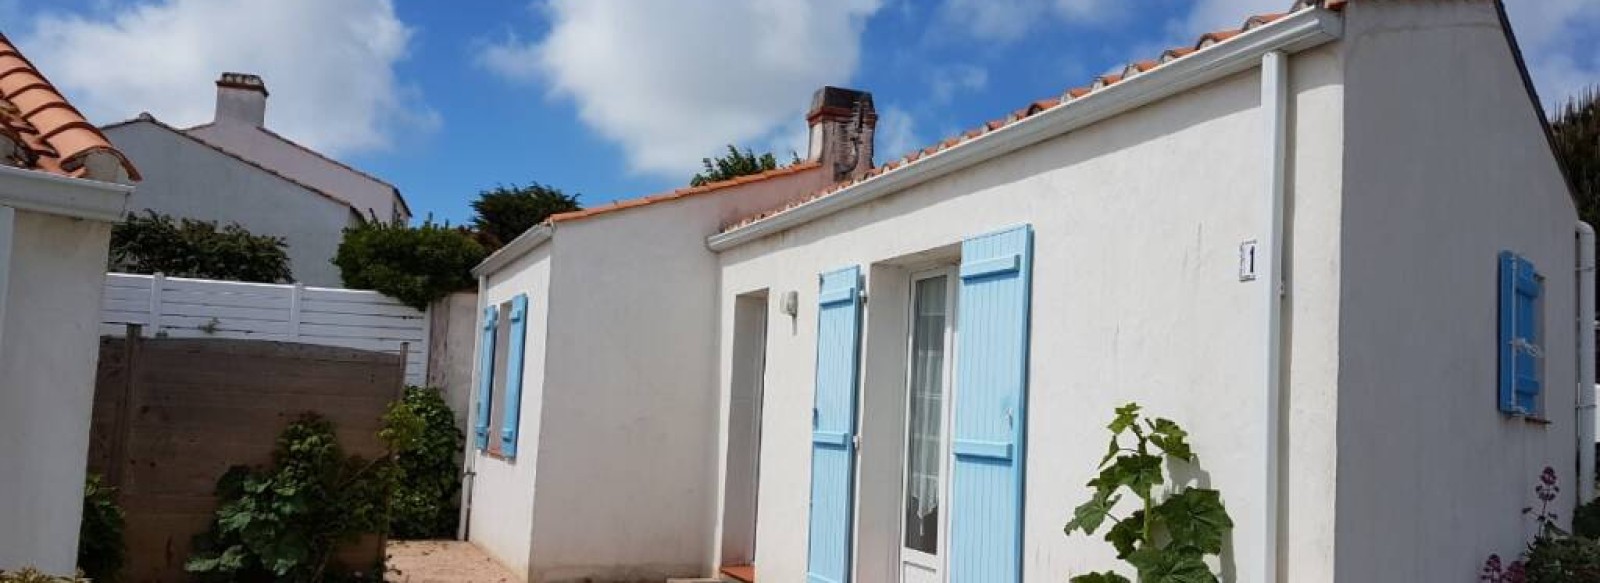 Maison a deux pas de la plage a Barbatre sur l'ile de Noirmoutier